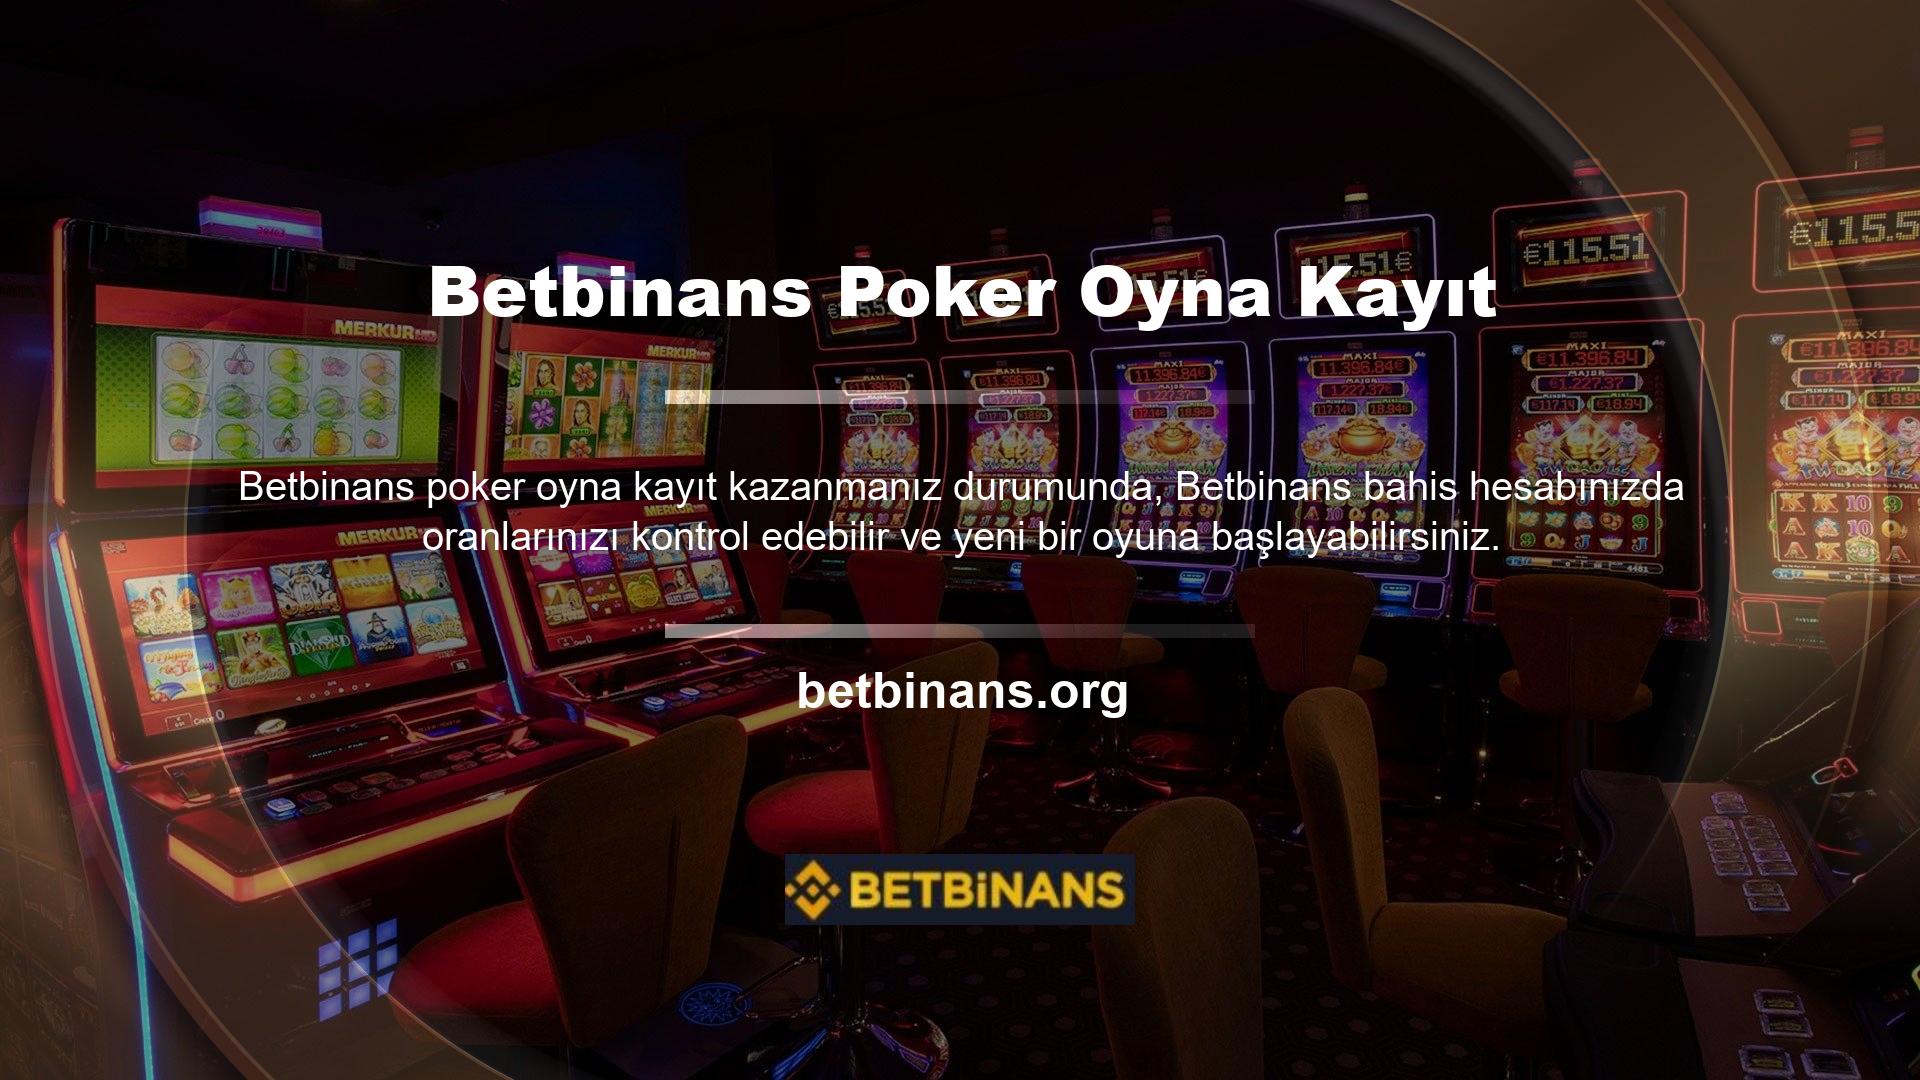 Aynı zamanda Betbinans poker kitap kayıt sitesi de her oyunun kazanma oranlarına göre kişiye özel bonuslar sunmaktadır